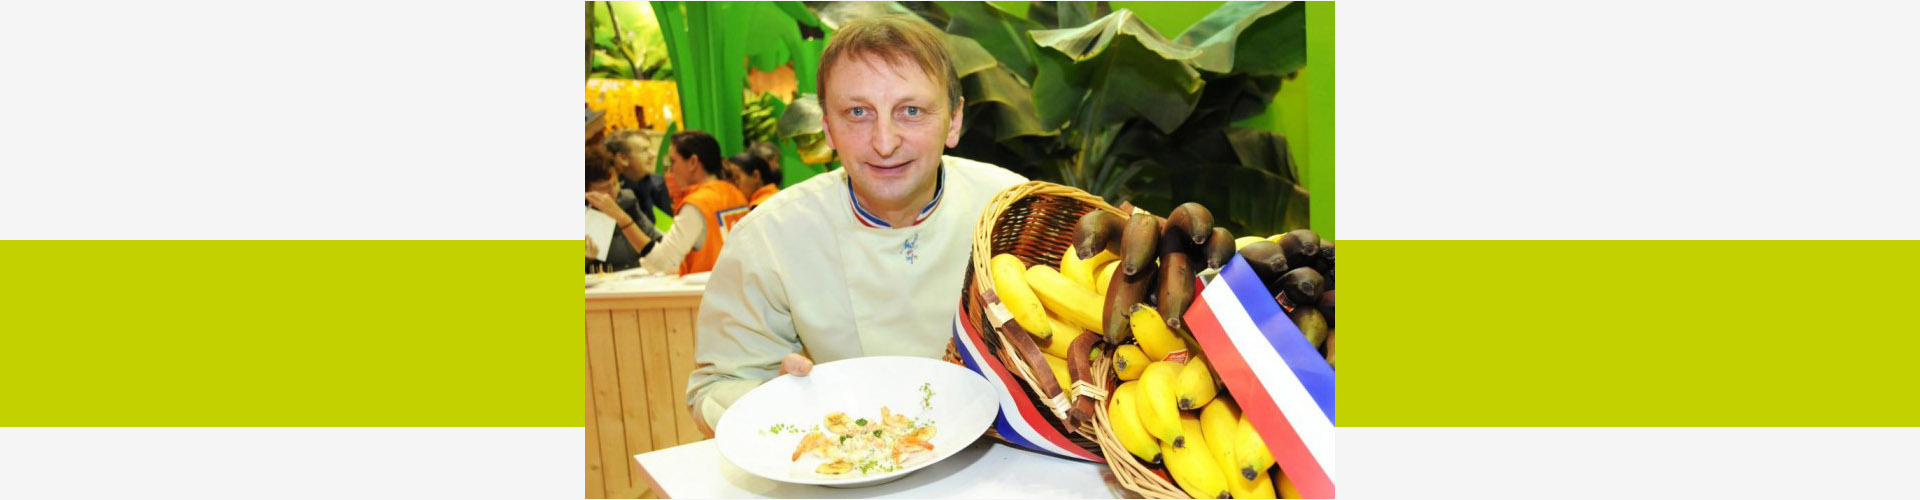 Header Actu Banane à la Française à l'Honneur - Frederic Jaunault MOF Primeur Fruits Legumes